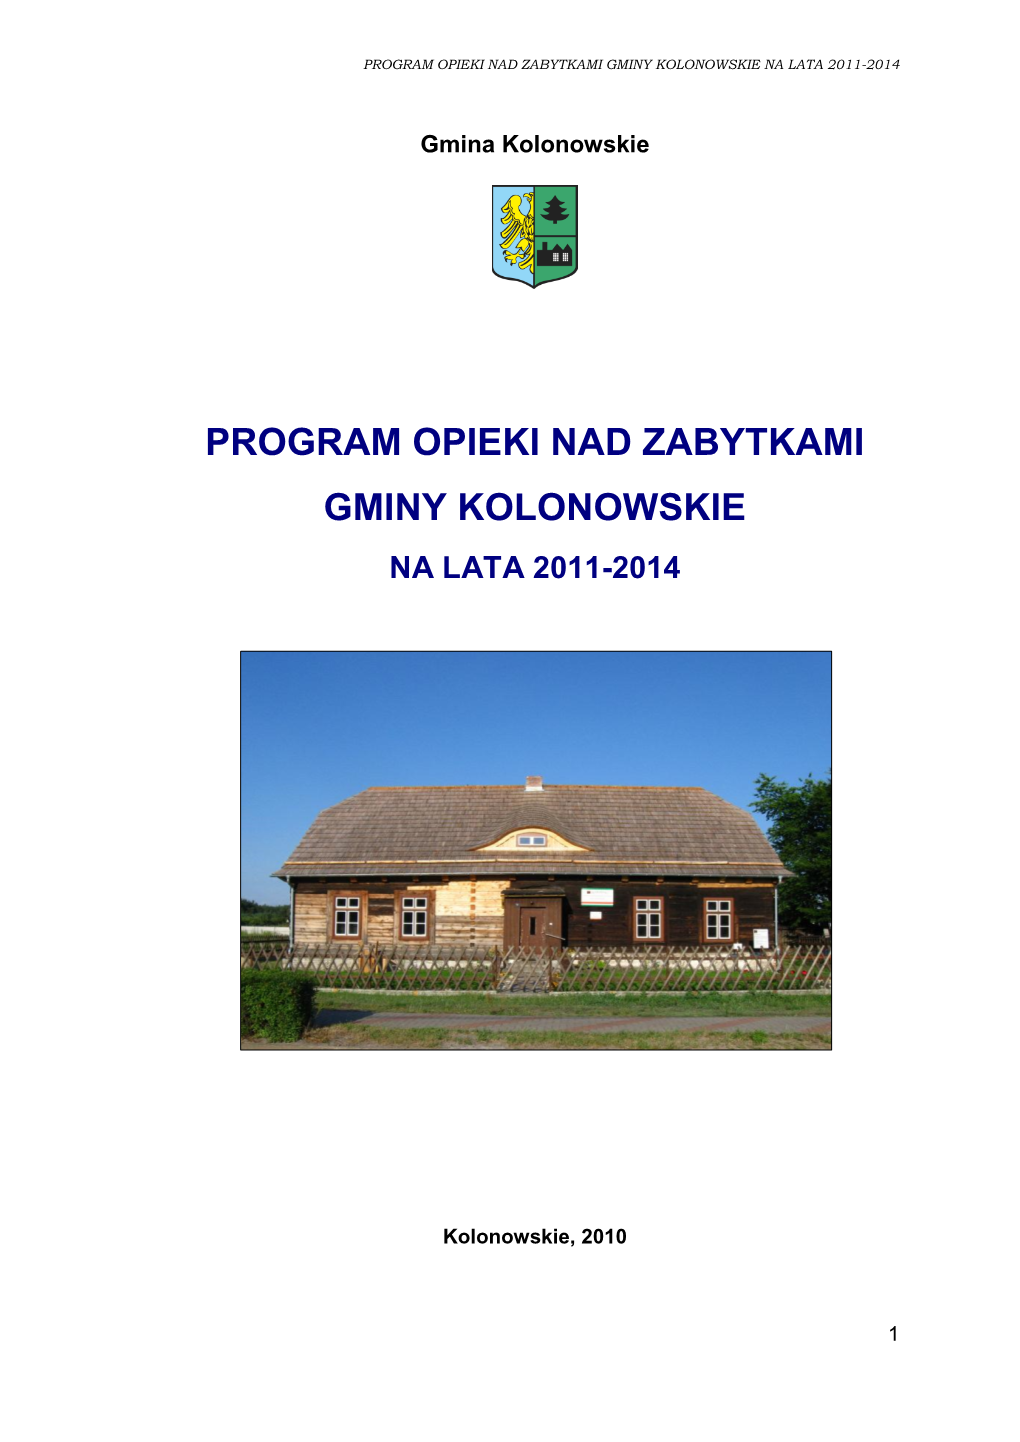 Program Opieki Nad Zabytkami Gminy Kolonowskie Na Lata 2011-2014